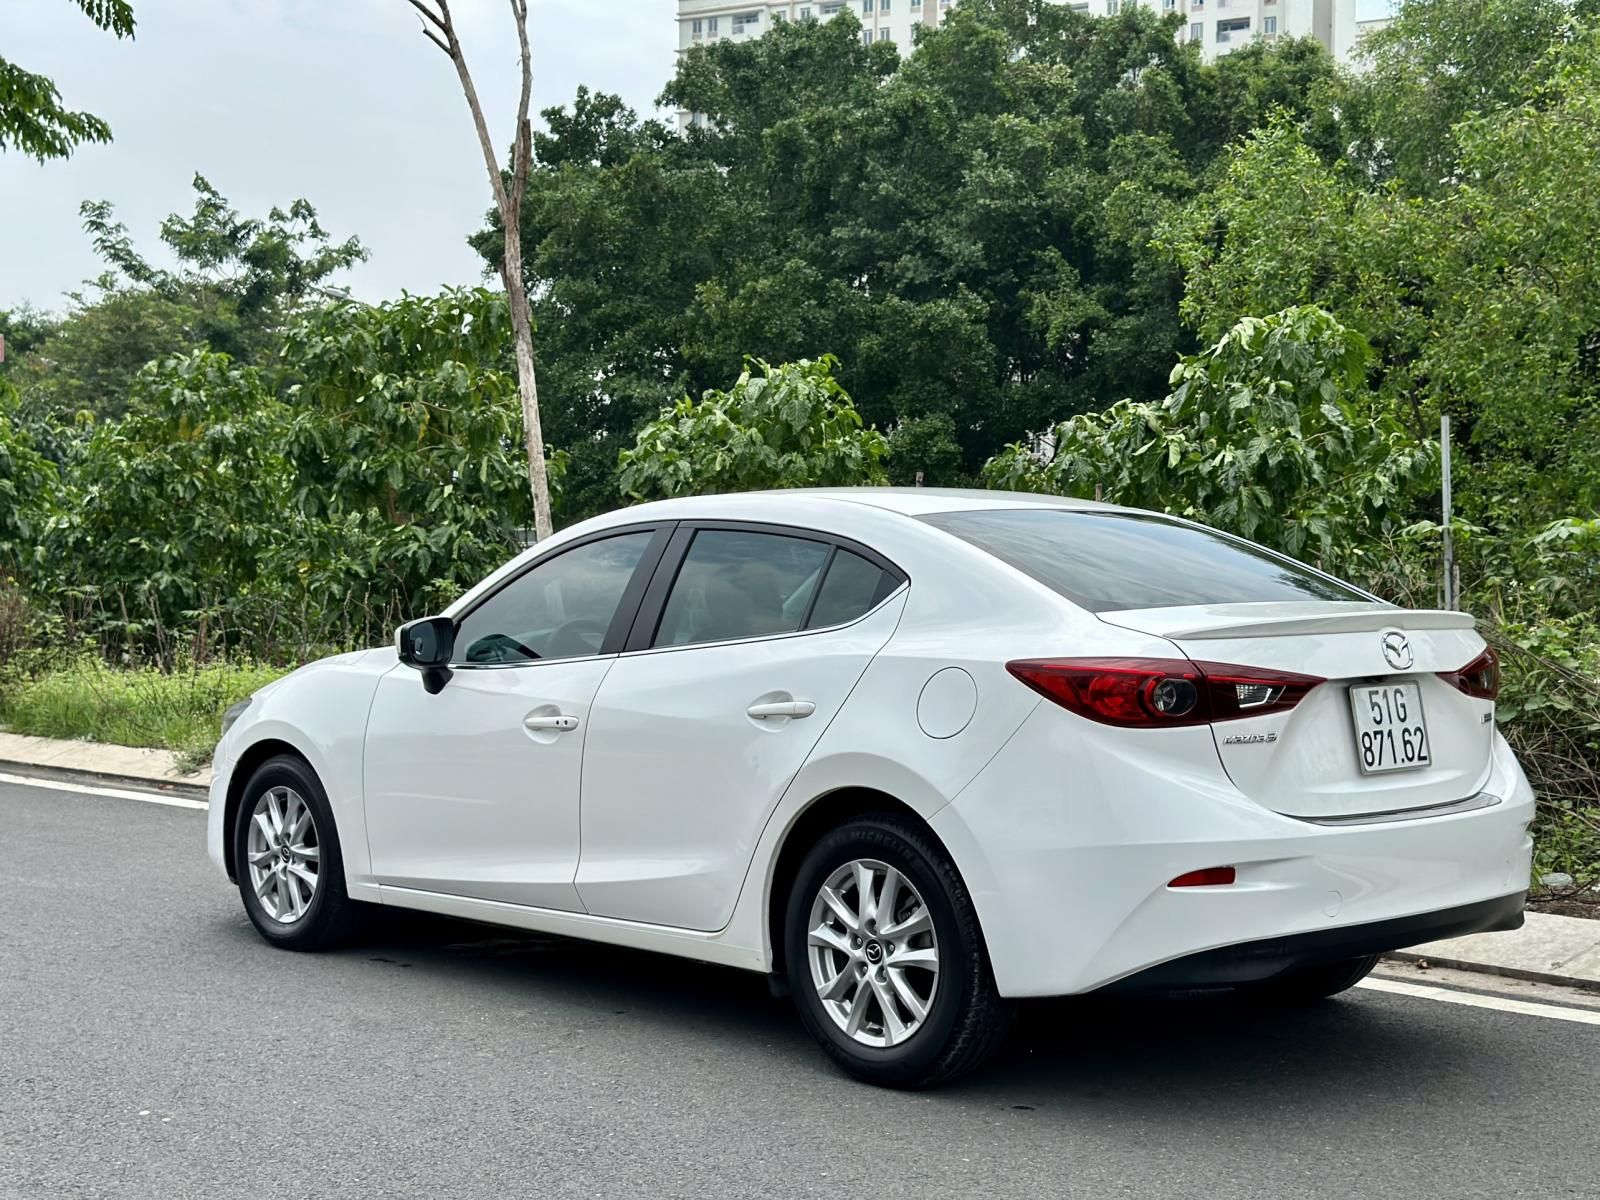 Mazda 3 2019 - Odo 40.000km